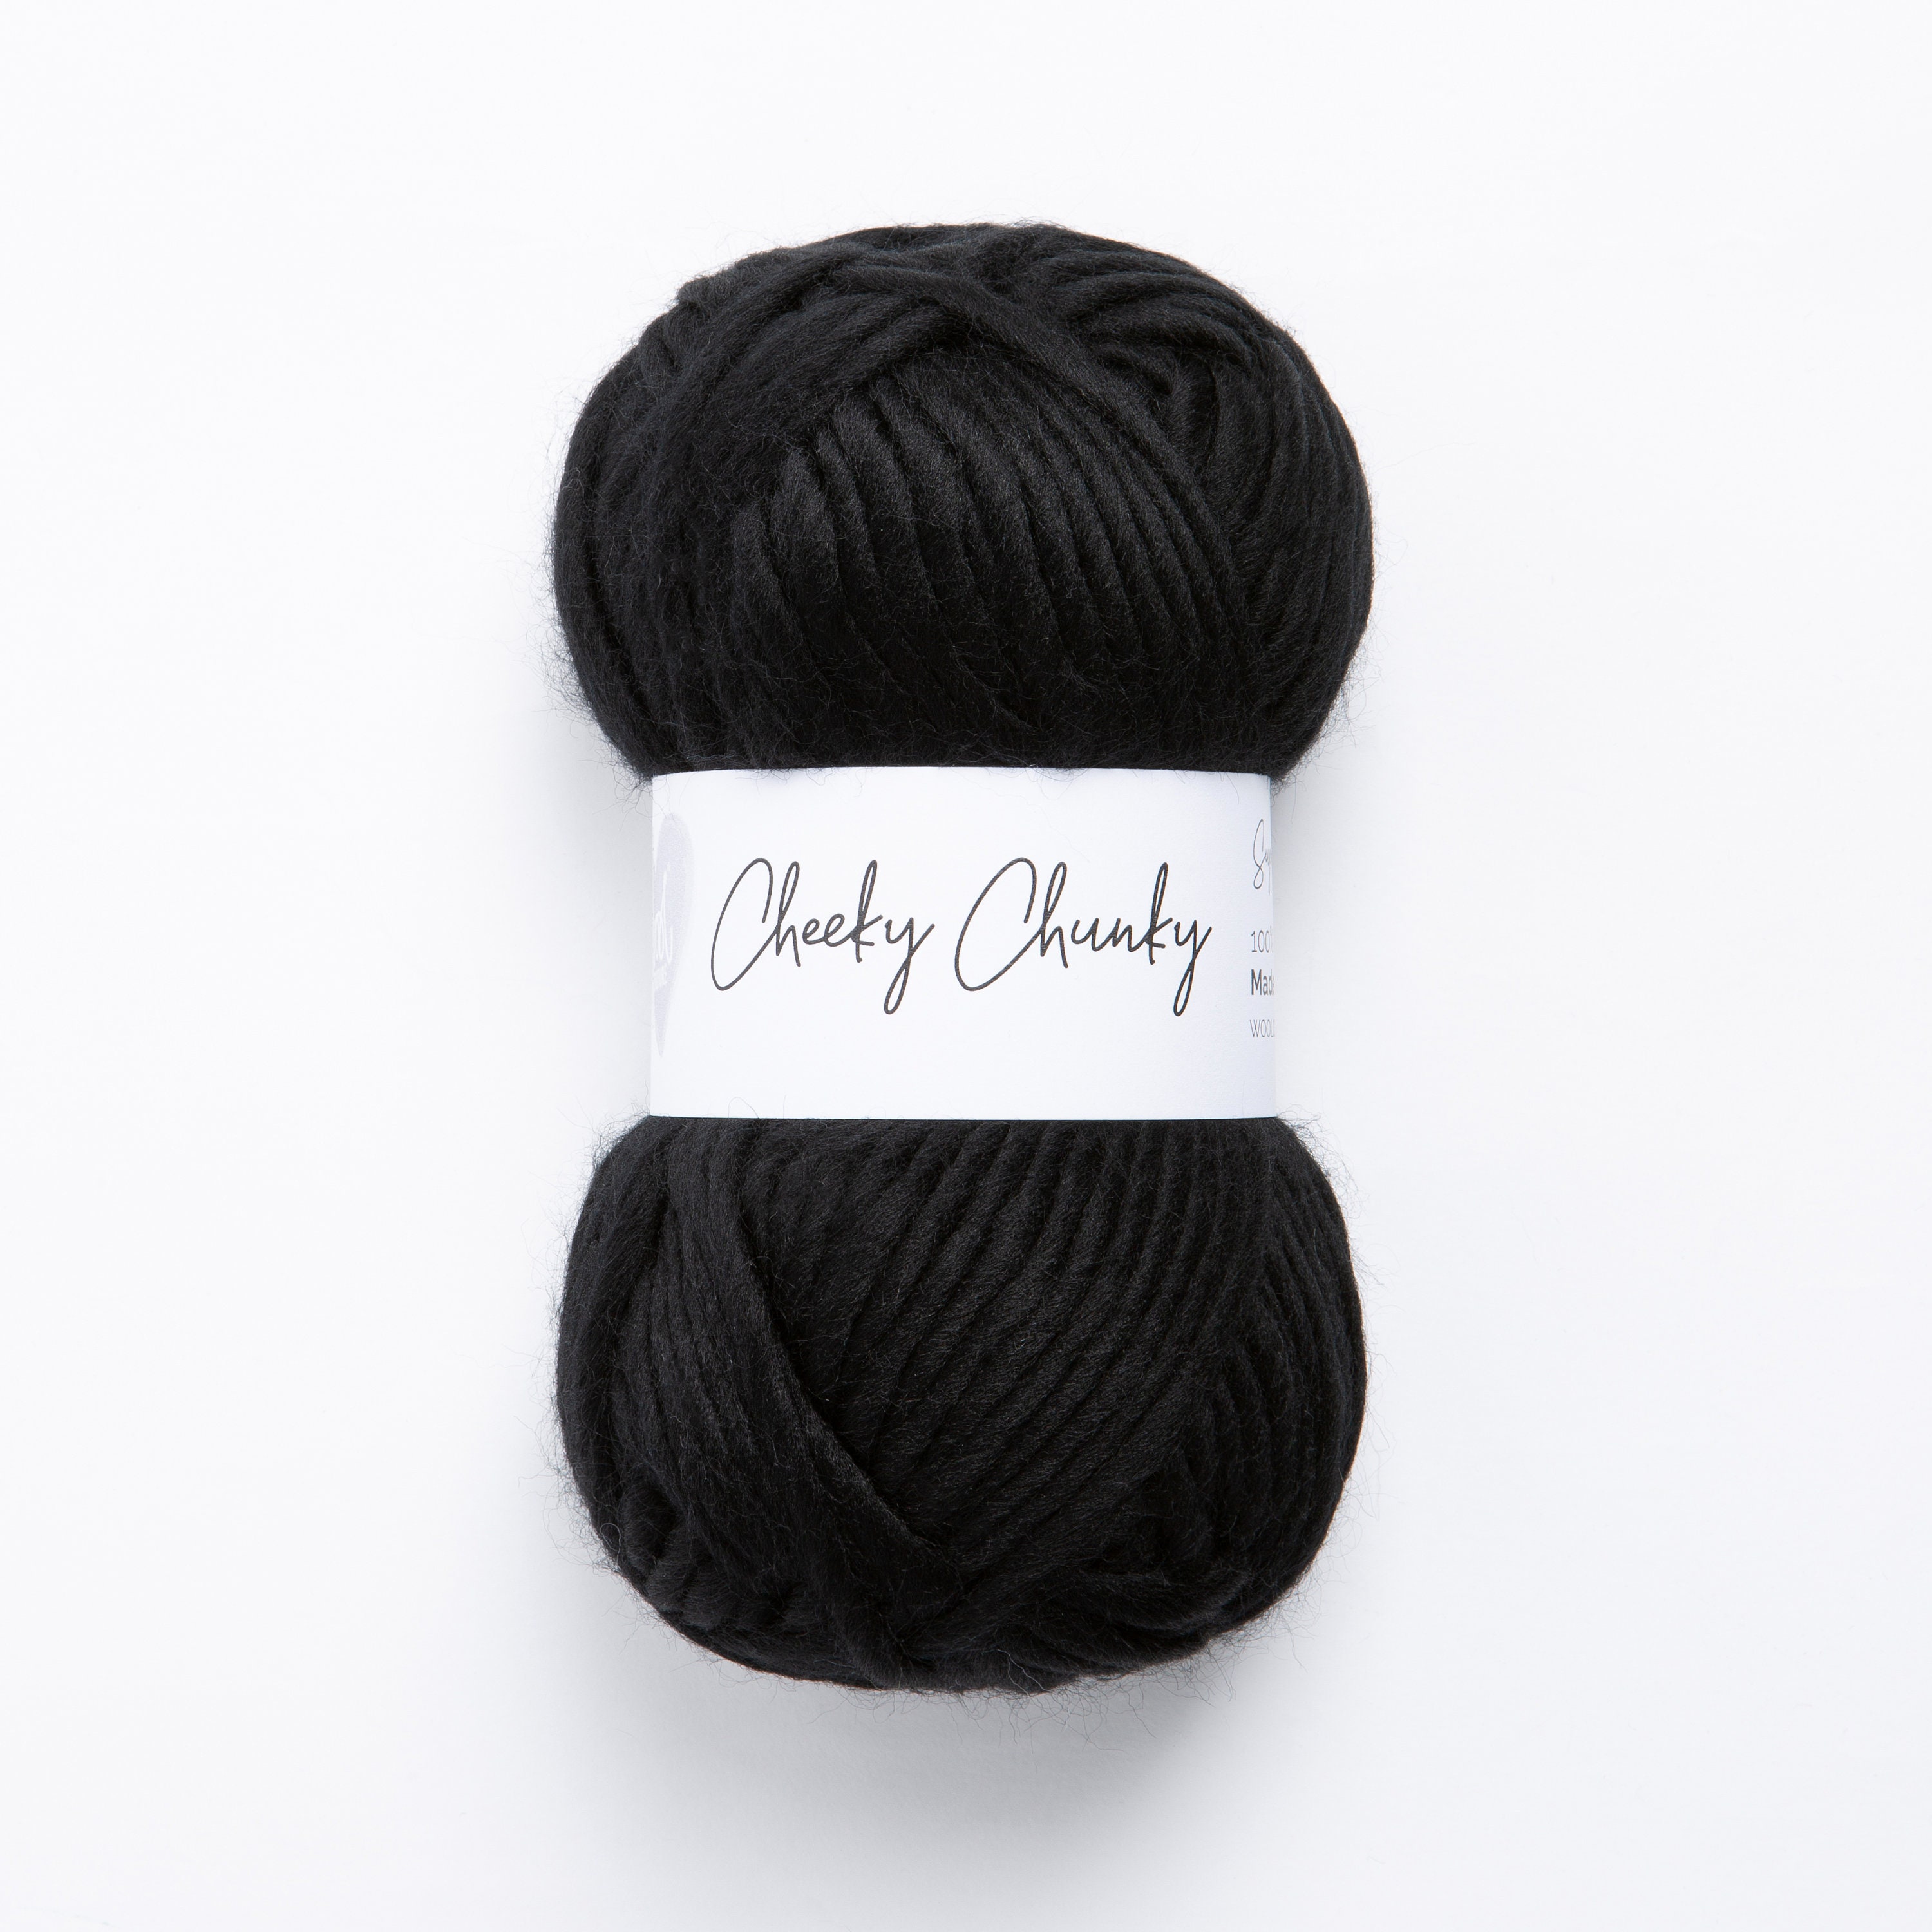 Hand Dyed Yarn, Superwash Merino Wool, Black, Gray, White